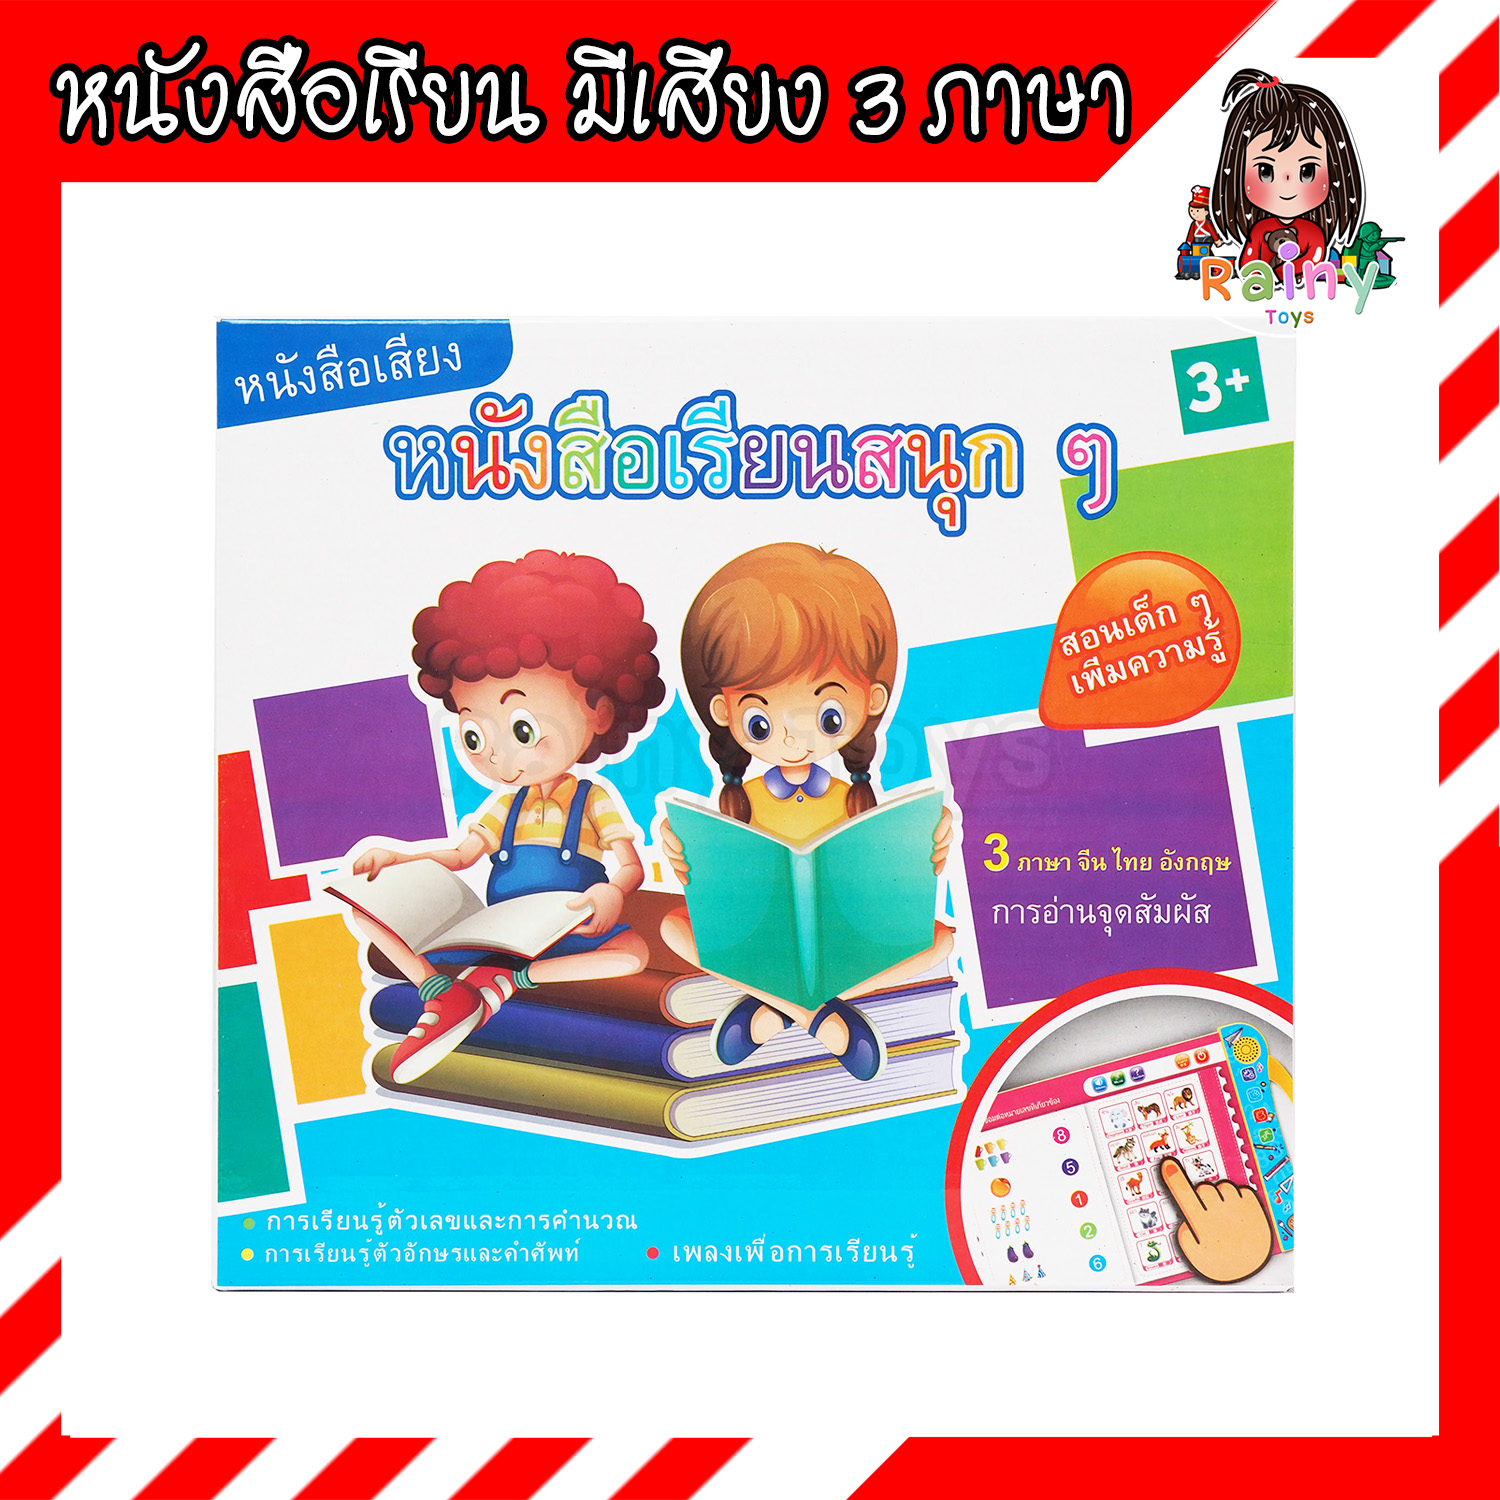 Rainy Toys ของเล่นเสริมพัฒนาการ หนังสือเสียง 3 ภาษา จีน ไทย อังกฤษ หนังสือเรียนสนุก ๆ มี มอก. ของเล่นเสริมพัฒนาการเด็ก ของเล่นฝึกภาษา